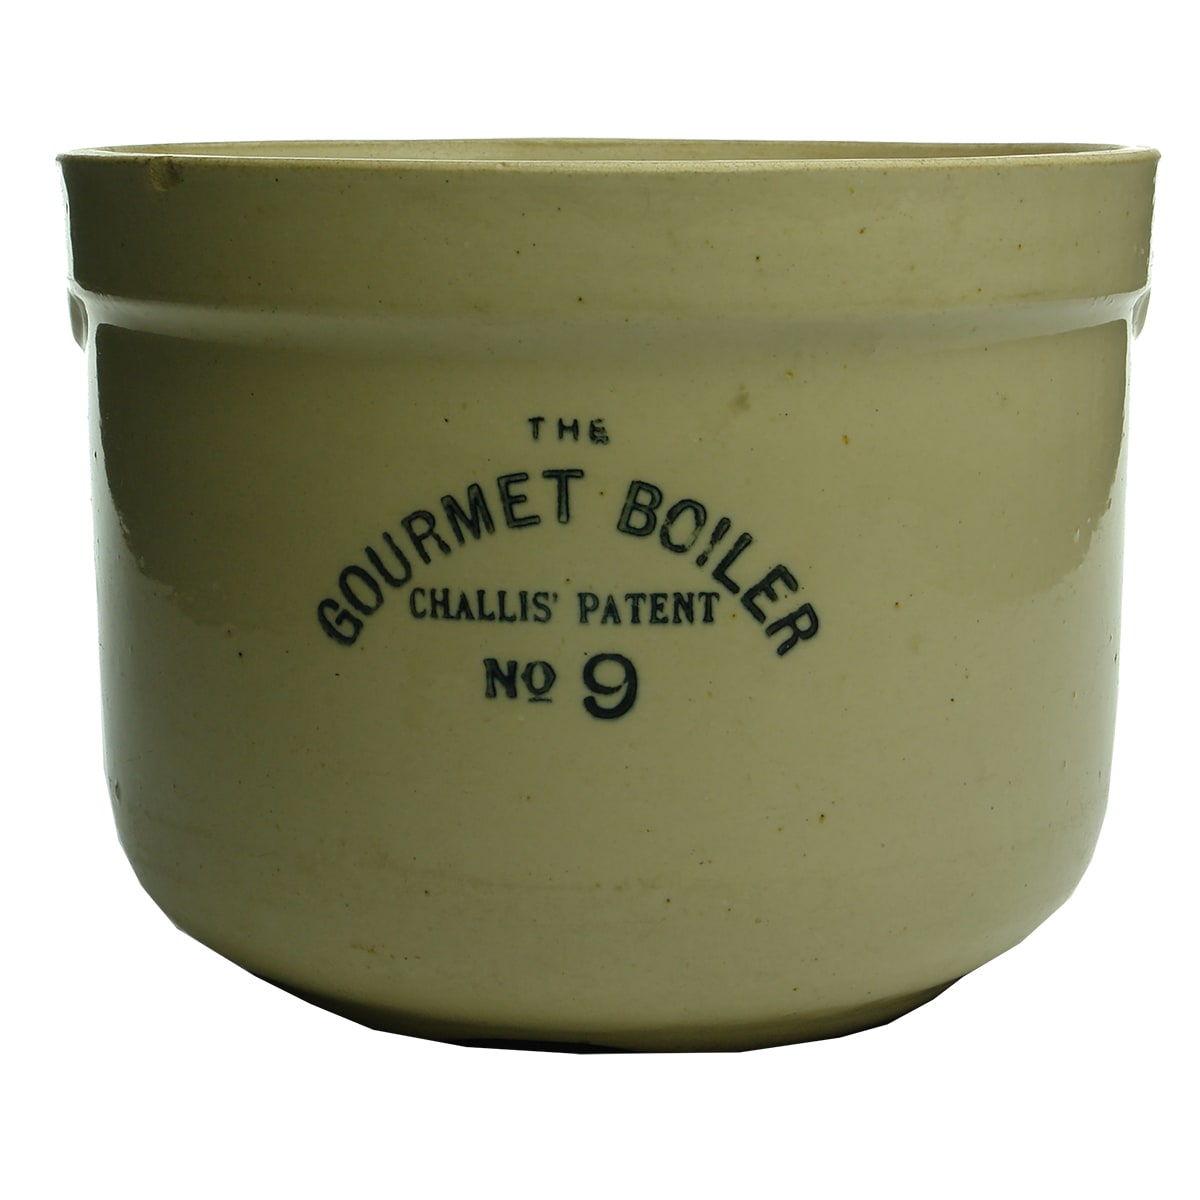 Kitchenalia. Gourmet Boiler, Challis' Patent, No 9.